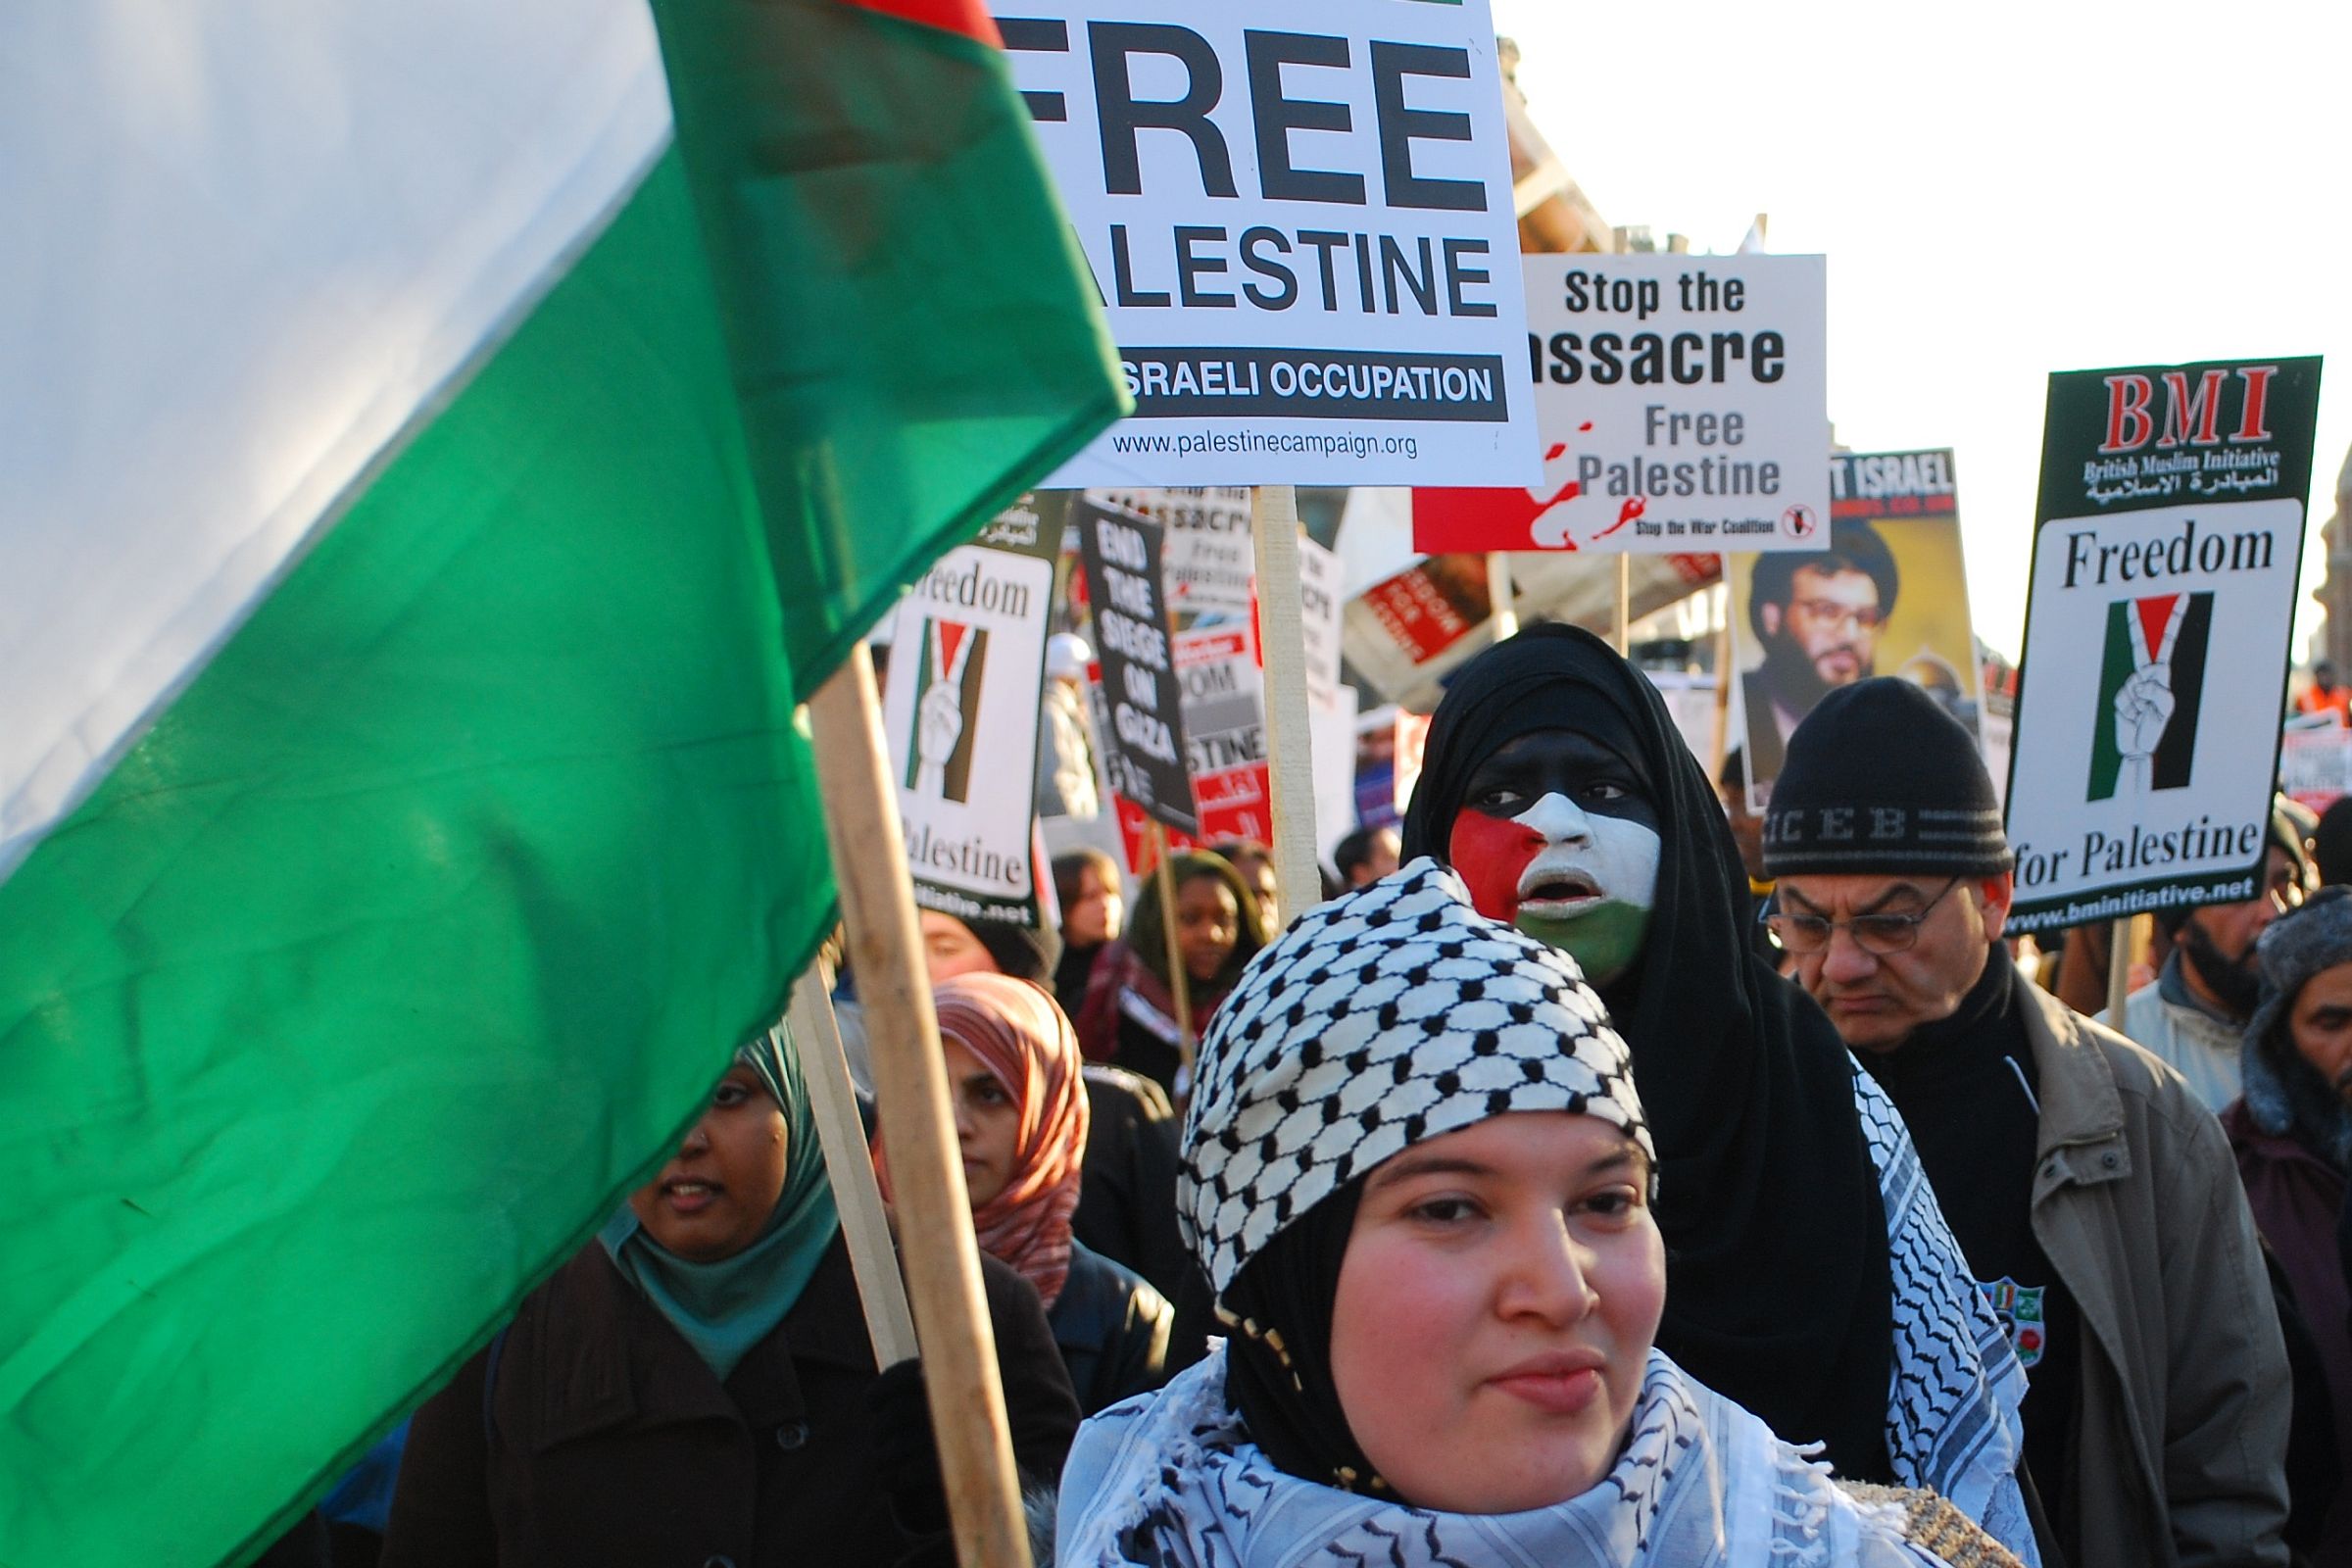 הטענה הפלסטינית שבפלסטין כולה אין חירות יש לה על מה להתבסס. הפגנה פרו פלסטינית בלונדון (צילום: גרהם מור CC BY ND 2.0)